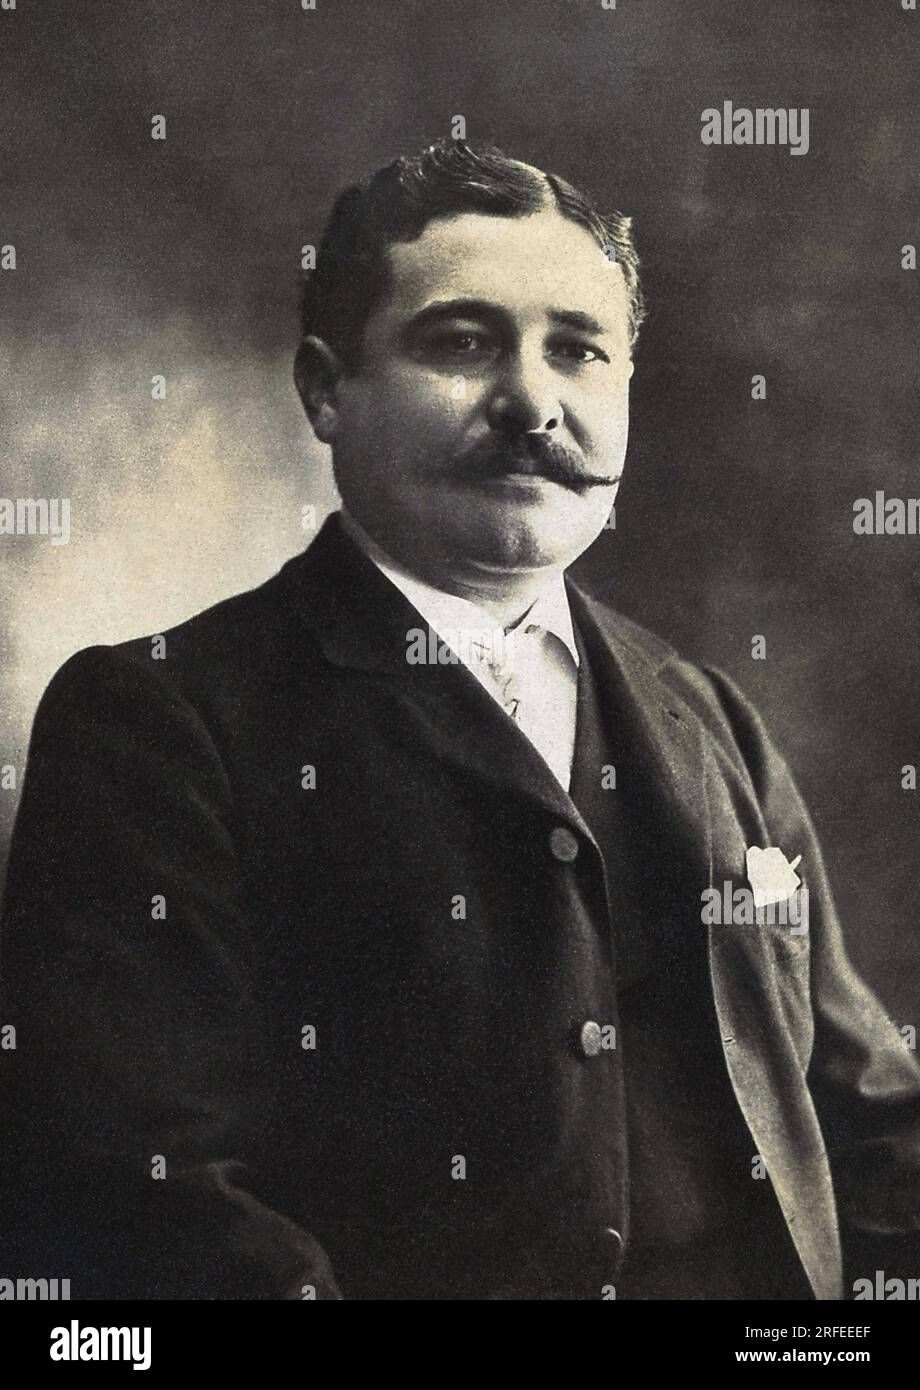 Portrait de Leon Daudet (1867-1942), ecrivain, journaliste et homme politique francais. Fotografie, Debüt du 20e Siecle. Stockfoto